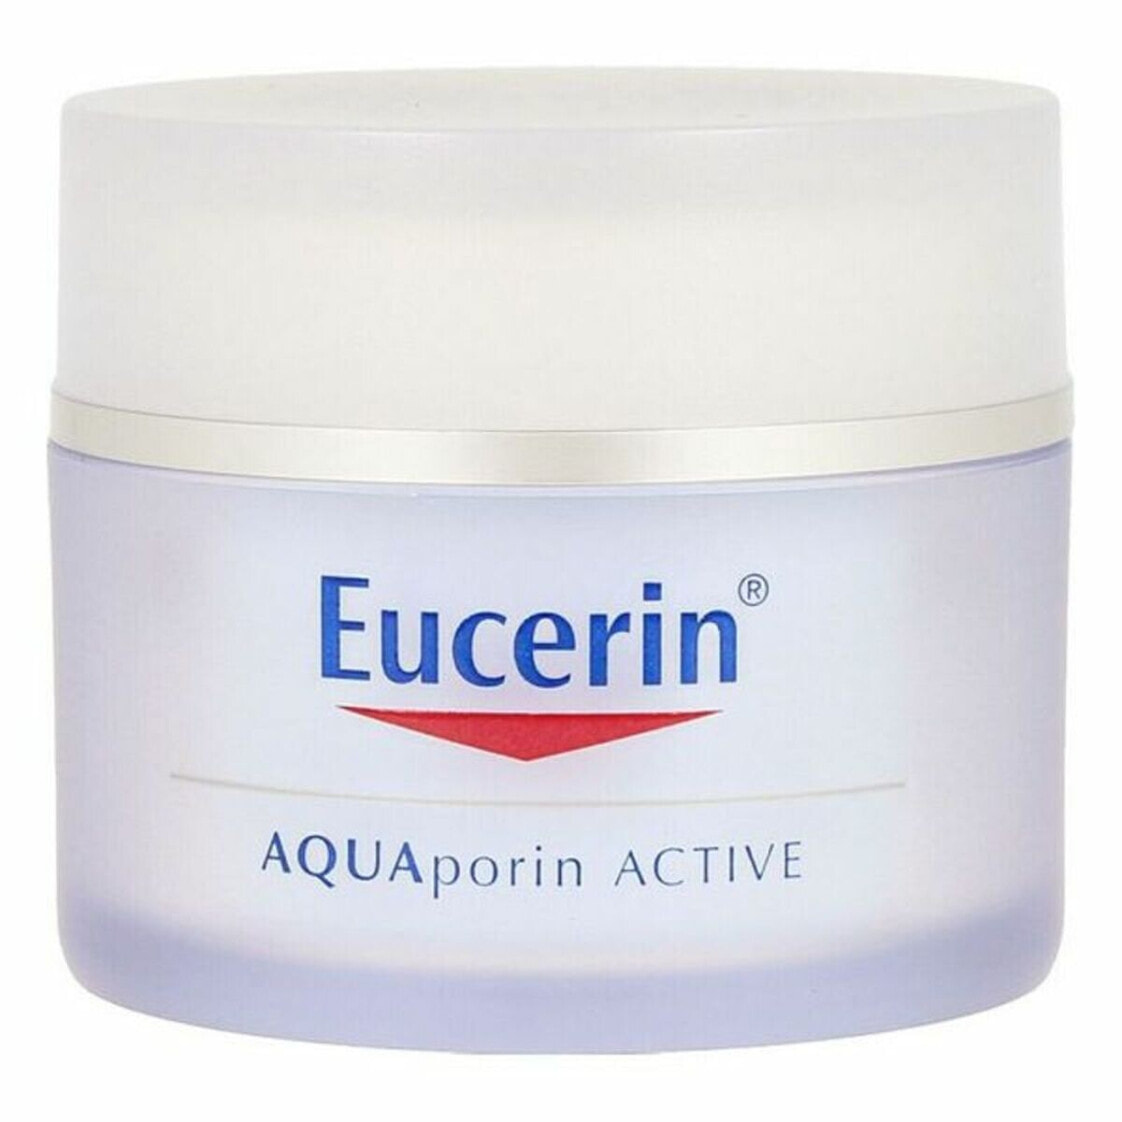 Eucerin Aquaporin Active. Eucerin крем. Eucerin крем для лица увлажняющий. Aquaporin Hydrating Cream.